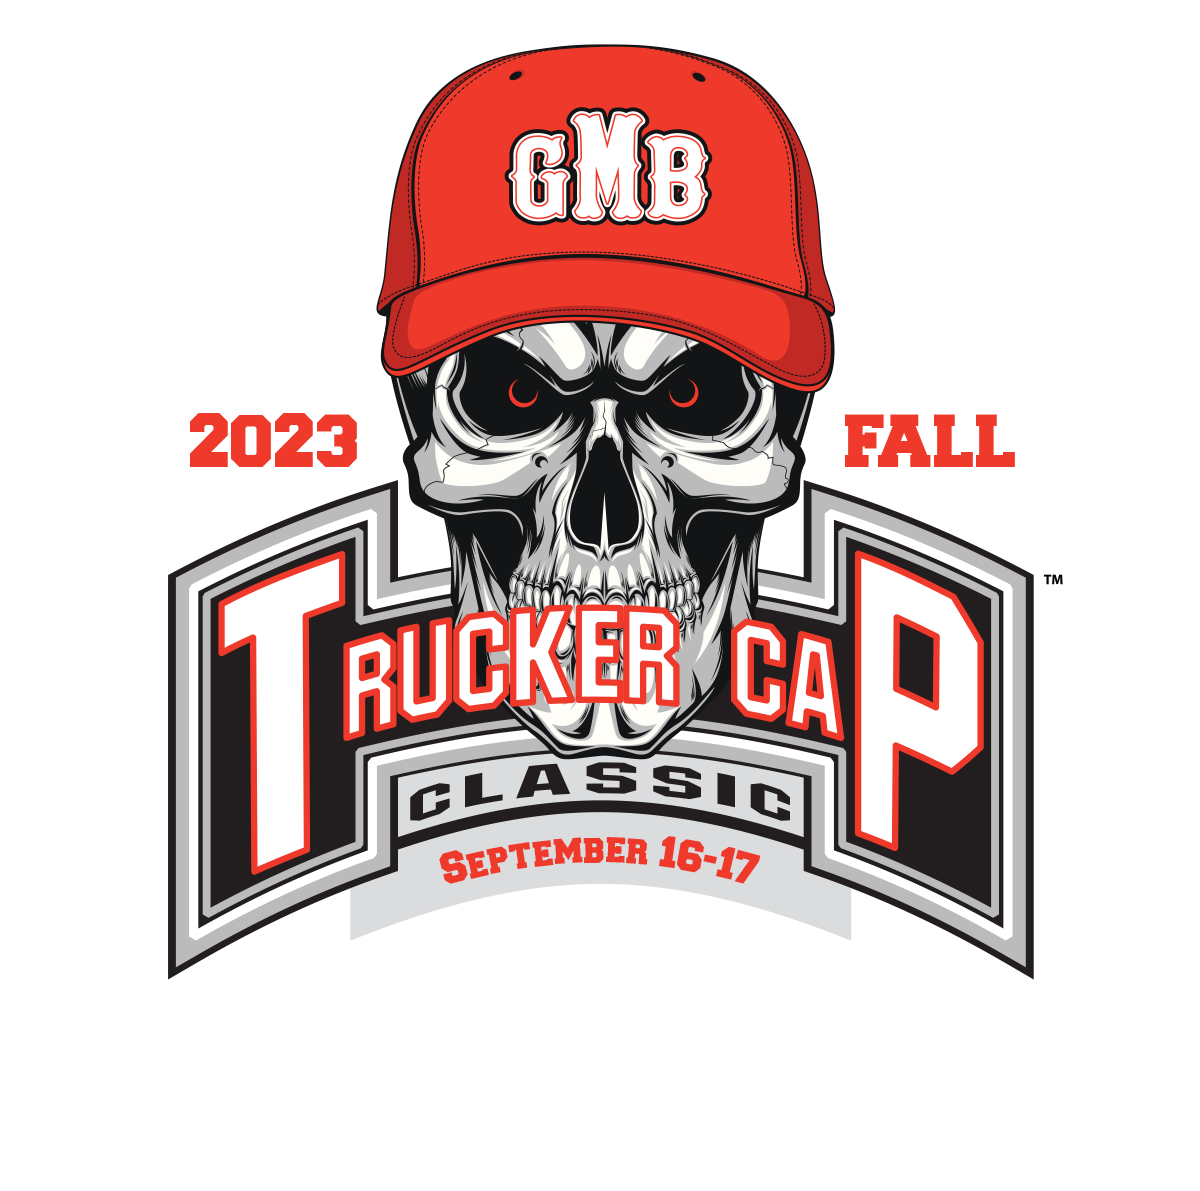 2023 GMB Fall Ball Trucker Cap Classic Tennessee 09/16/2023 09/17